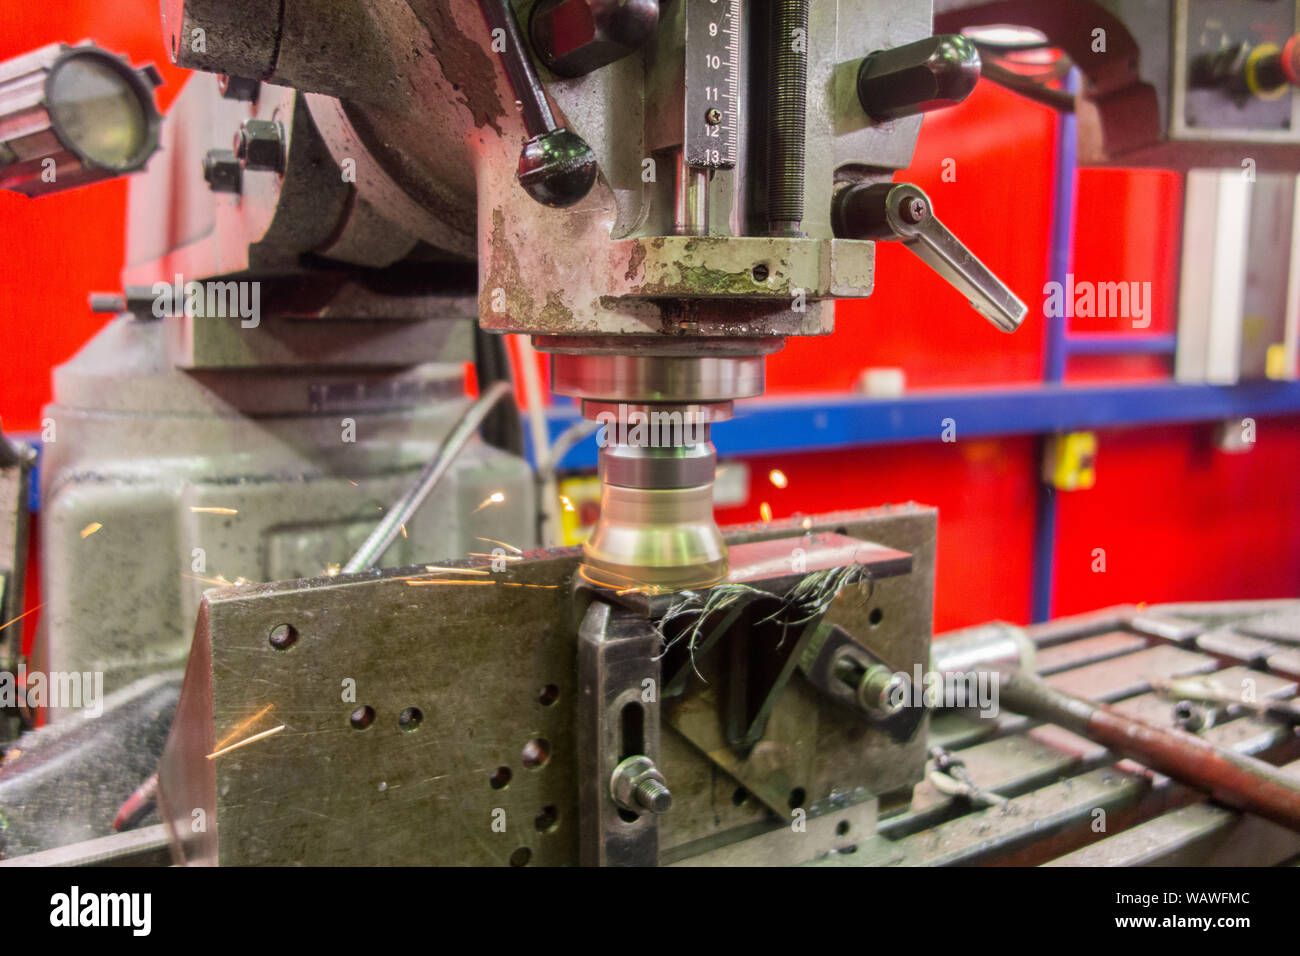 KRV macchina fresatrice essendo utilizzato in un settore manifatturiero engineering steel fabbrica di lavoro di produrre scintille durante una operazione di lavorazione Foto Stock